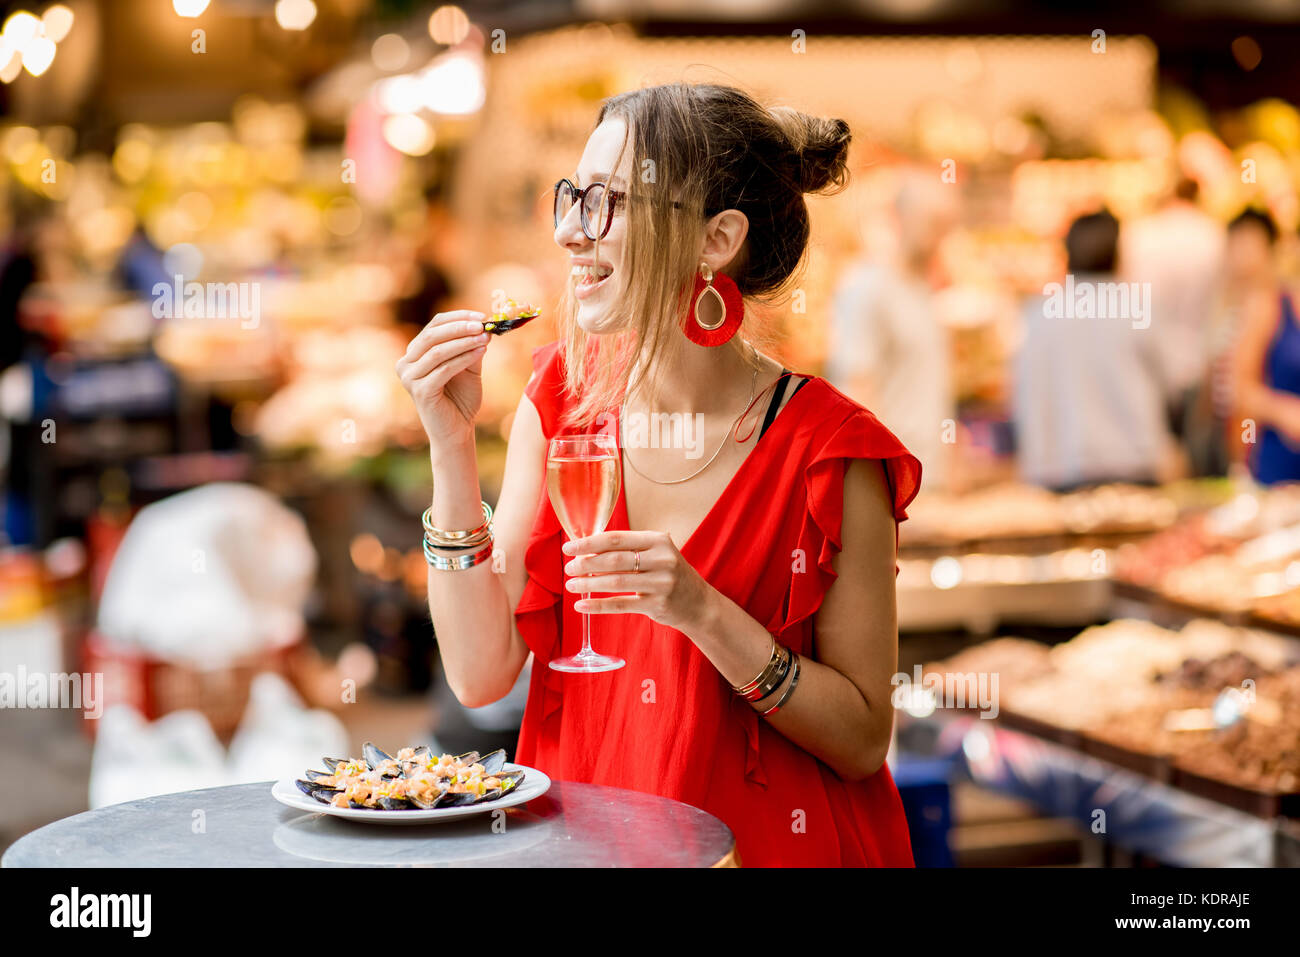 Femme mangé des moules au marché alimentaire Banque D'Images